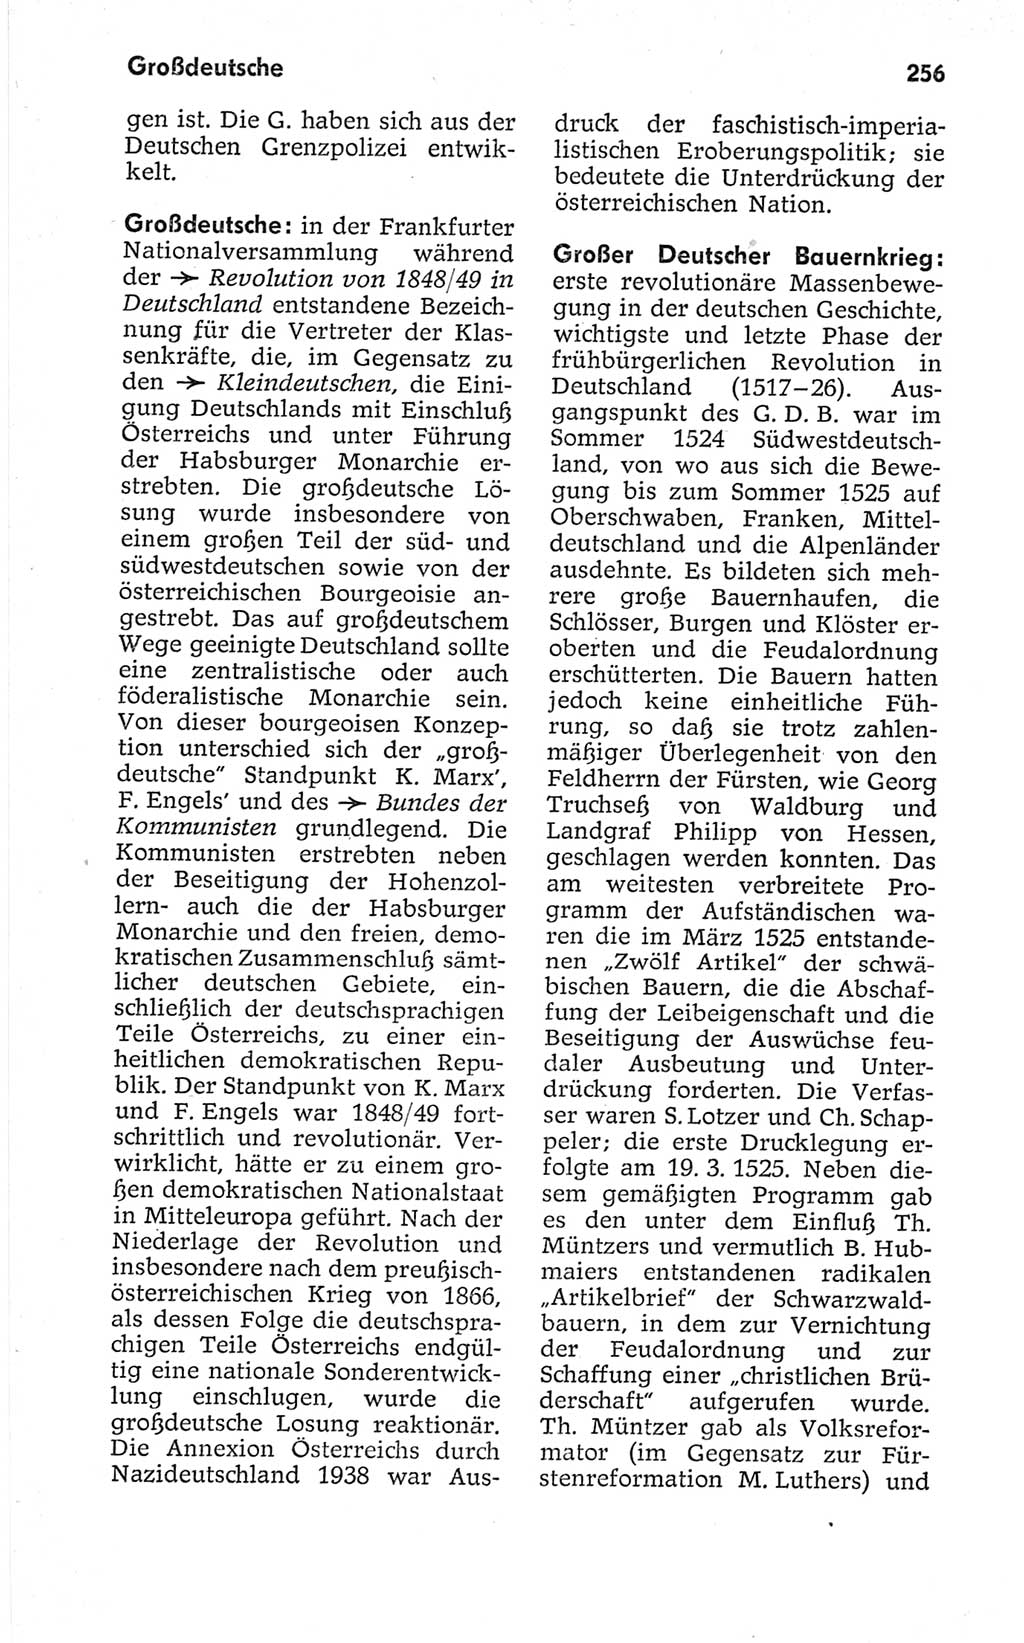 Kleines politisches Wörterbuch [Deutsche Demokratische Republik (DDR)] 1967, Seite 256 (Kl. pol. Wb. DDR 1967, S. 256)